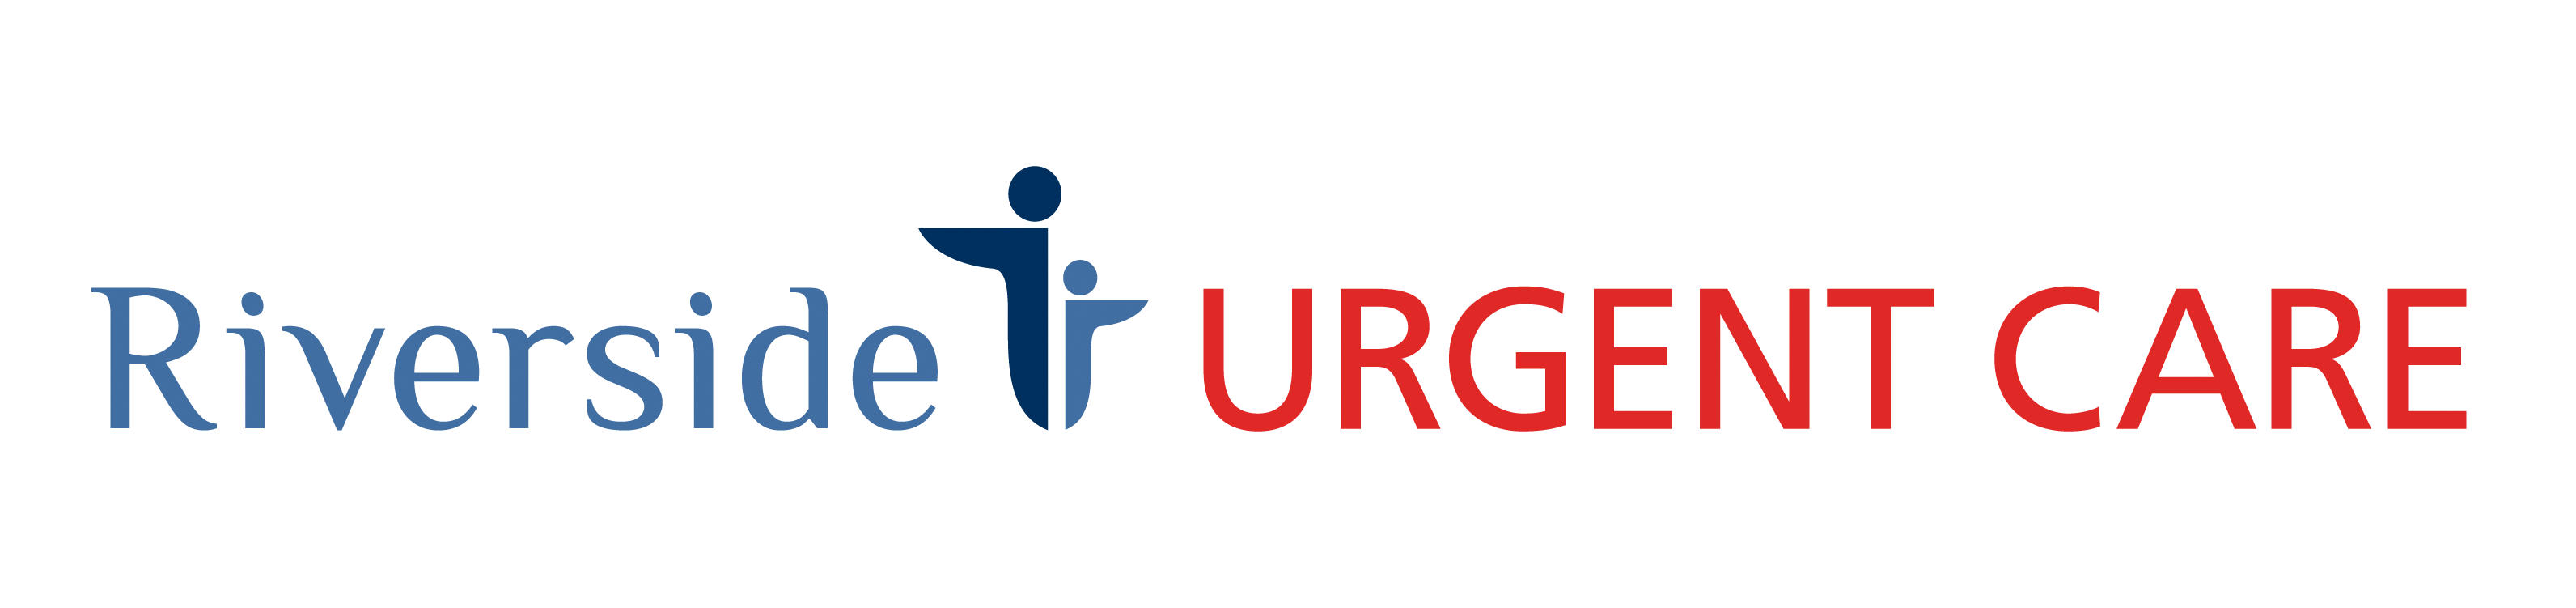 Riverside Urgent Care - Willingboro Logo